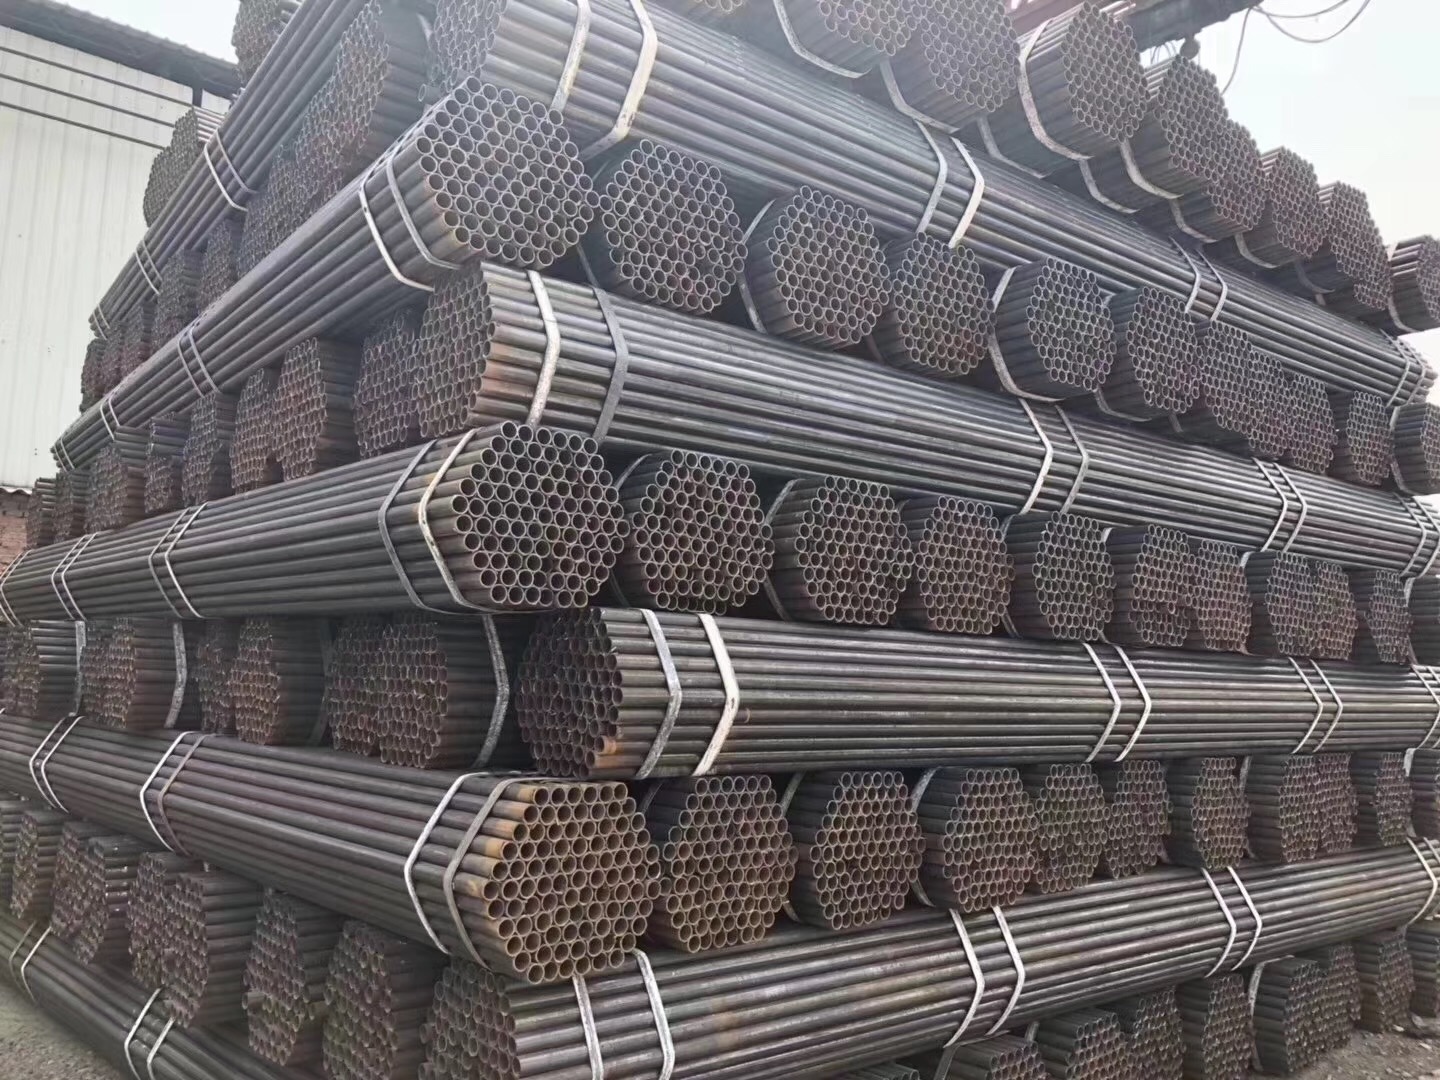 架子管 焊管 网架 架子管 焊管 网架  高频焊管图片